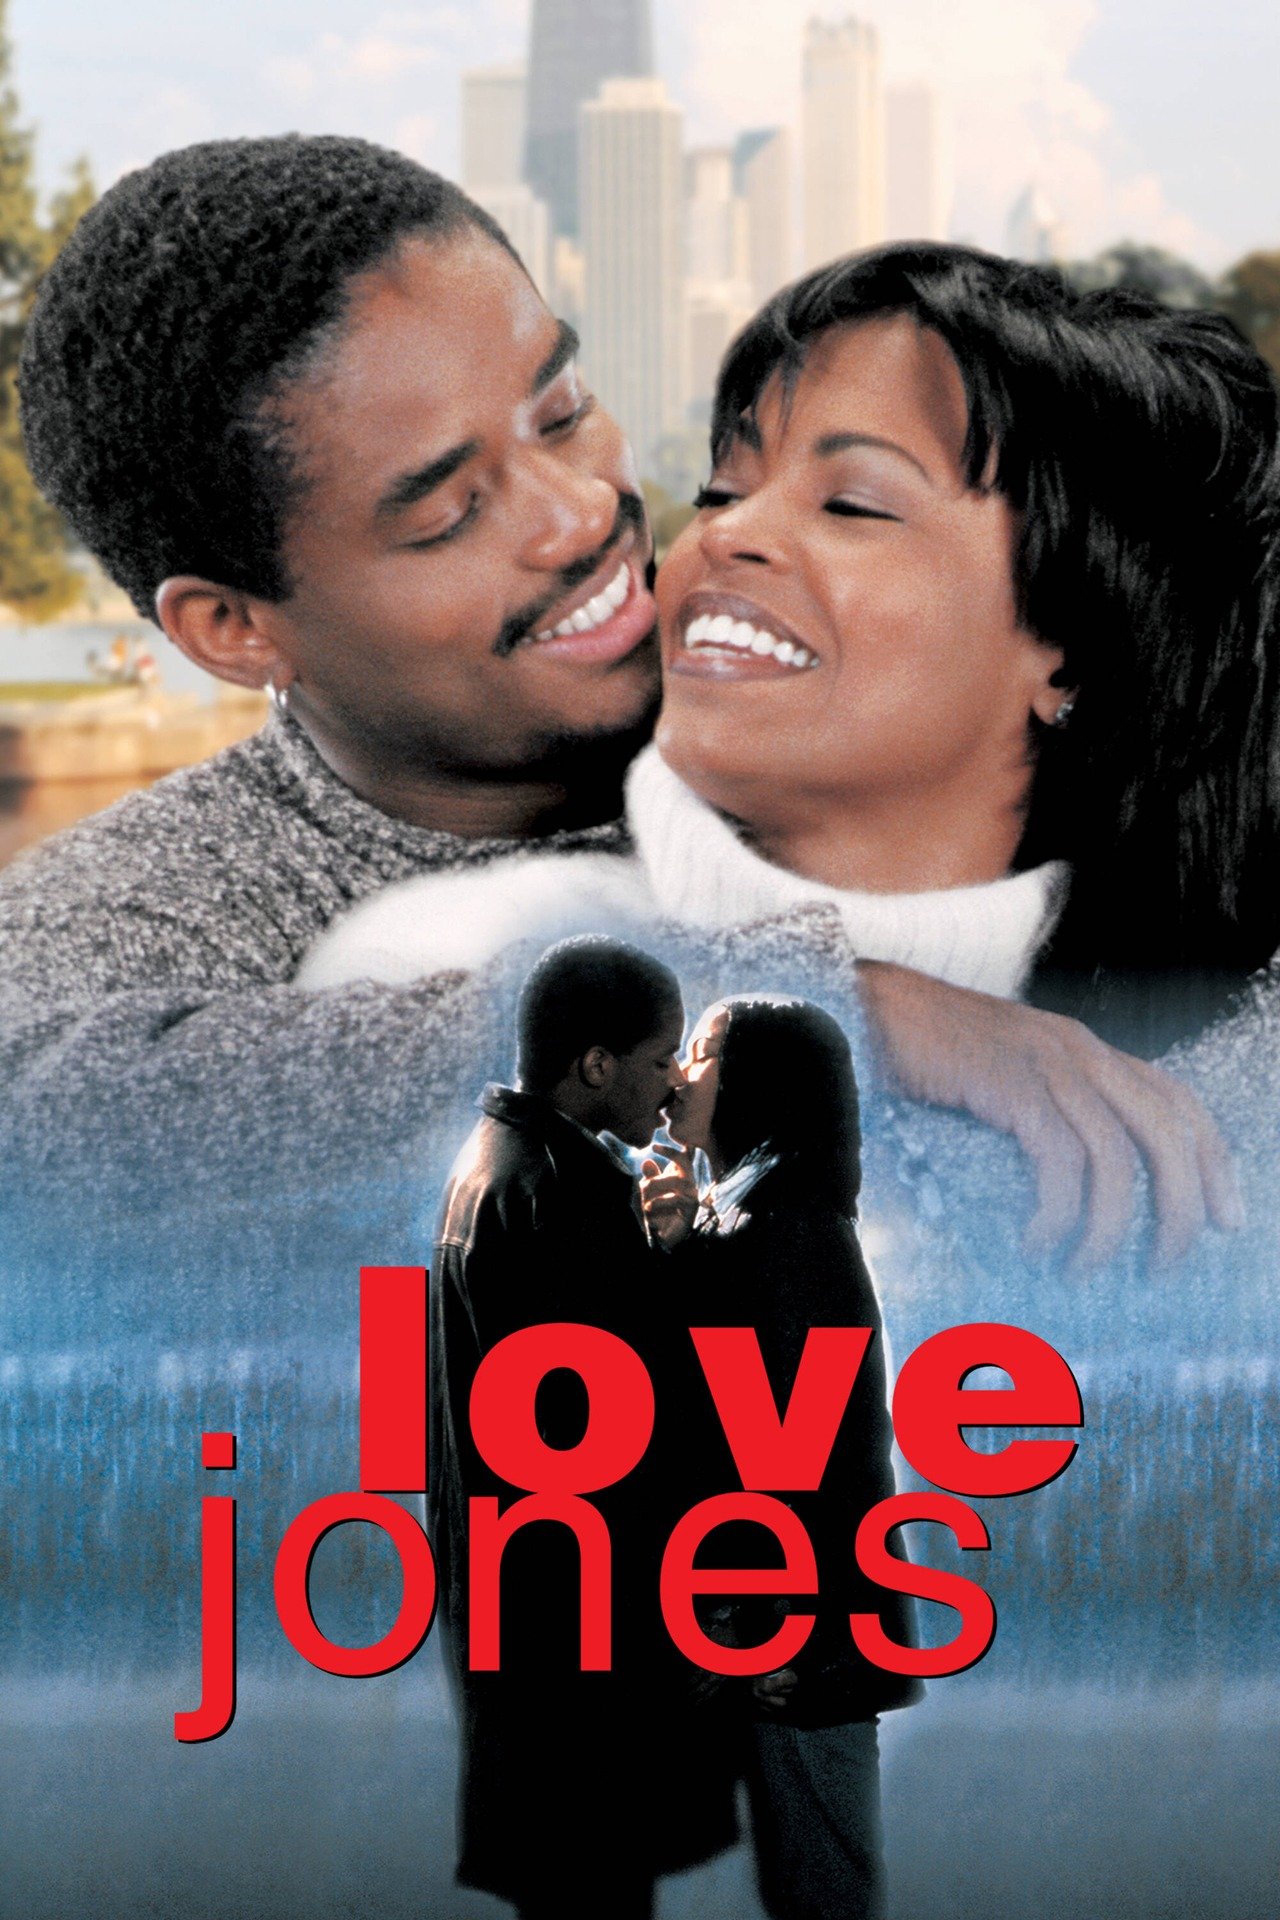 love jones movie review